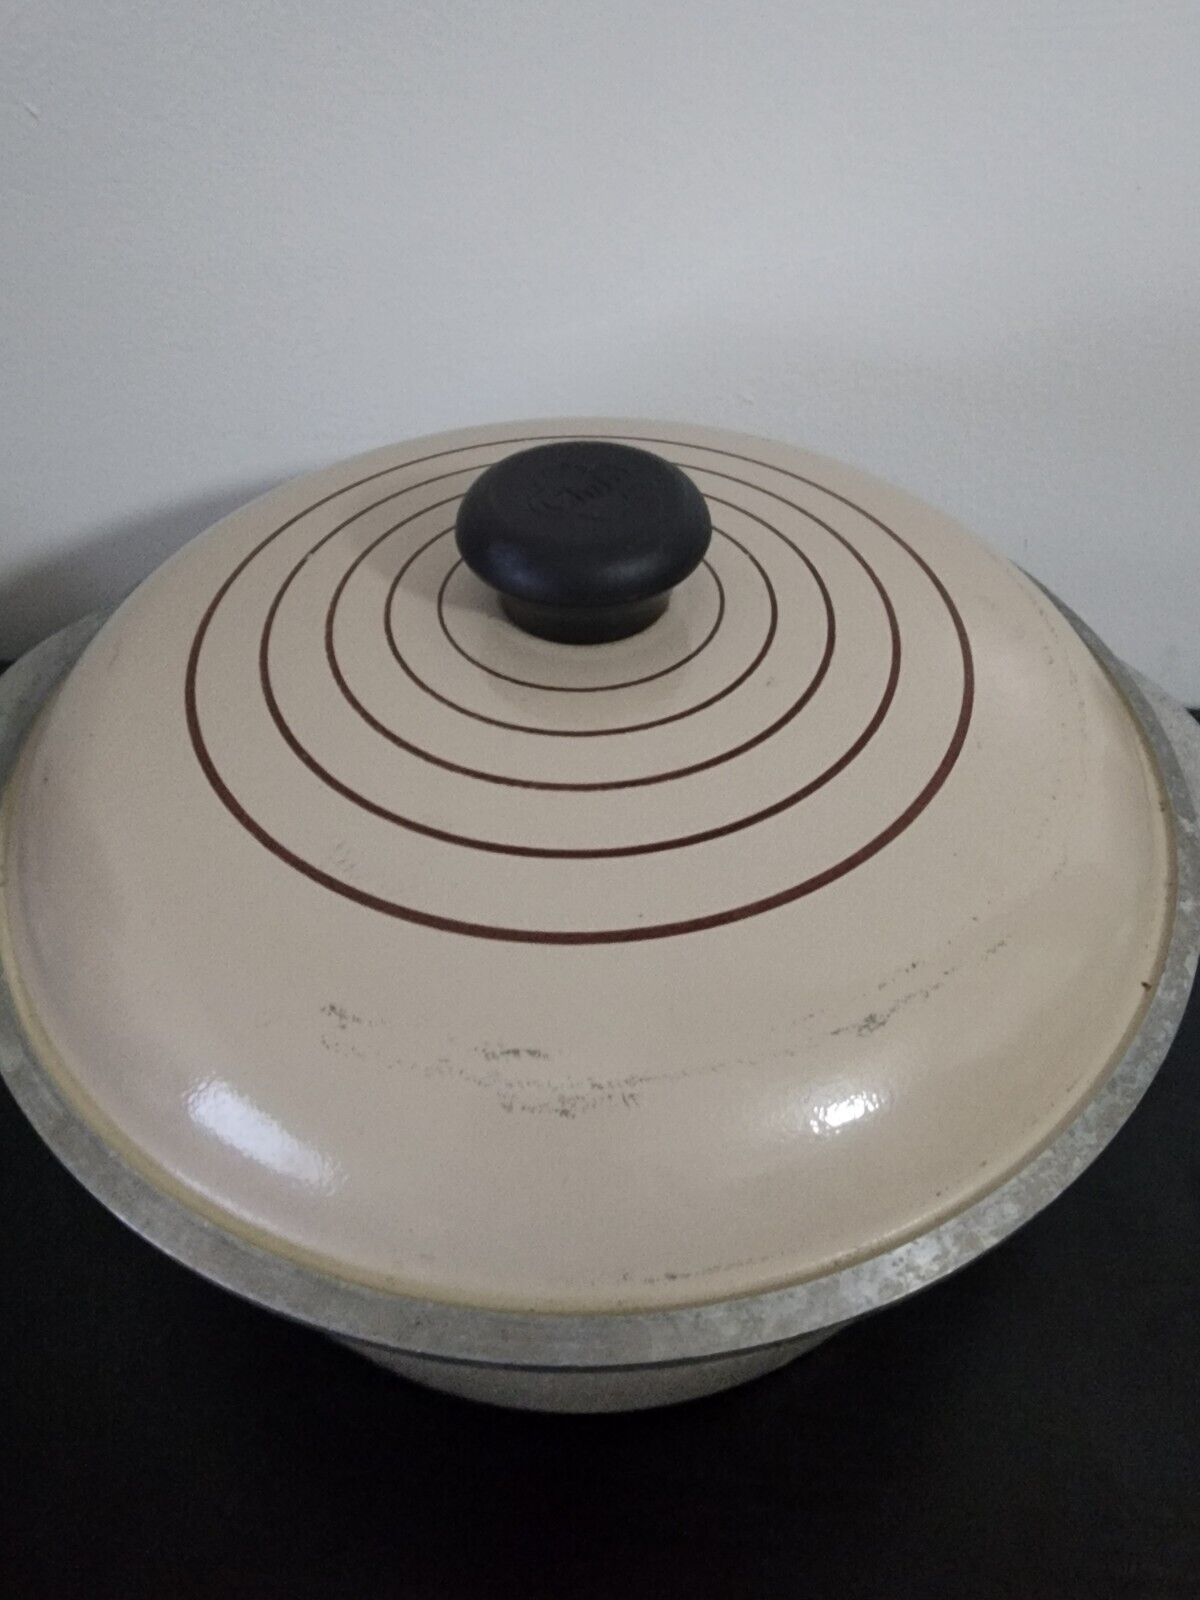 Vintage Club Aluminum Beige Stock Pot With Lid 4 Quart Dutch Oven Cookware